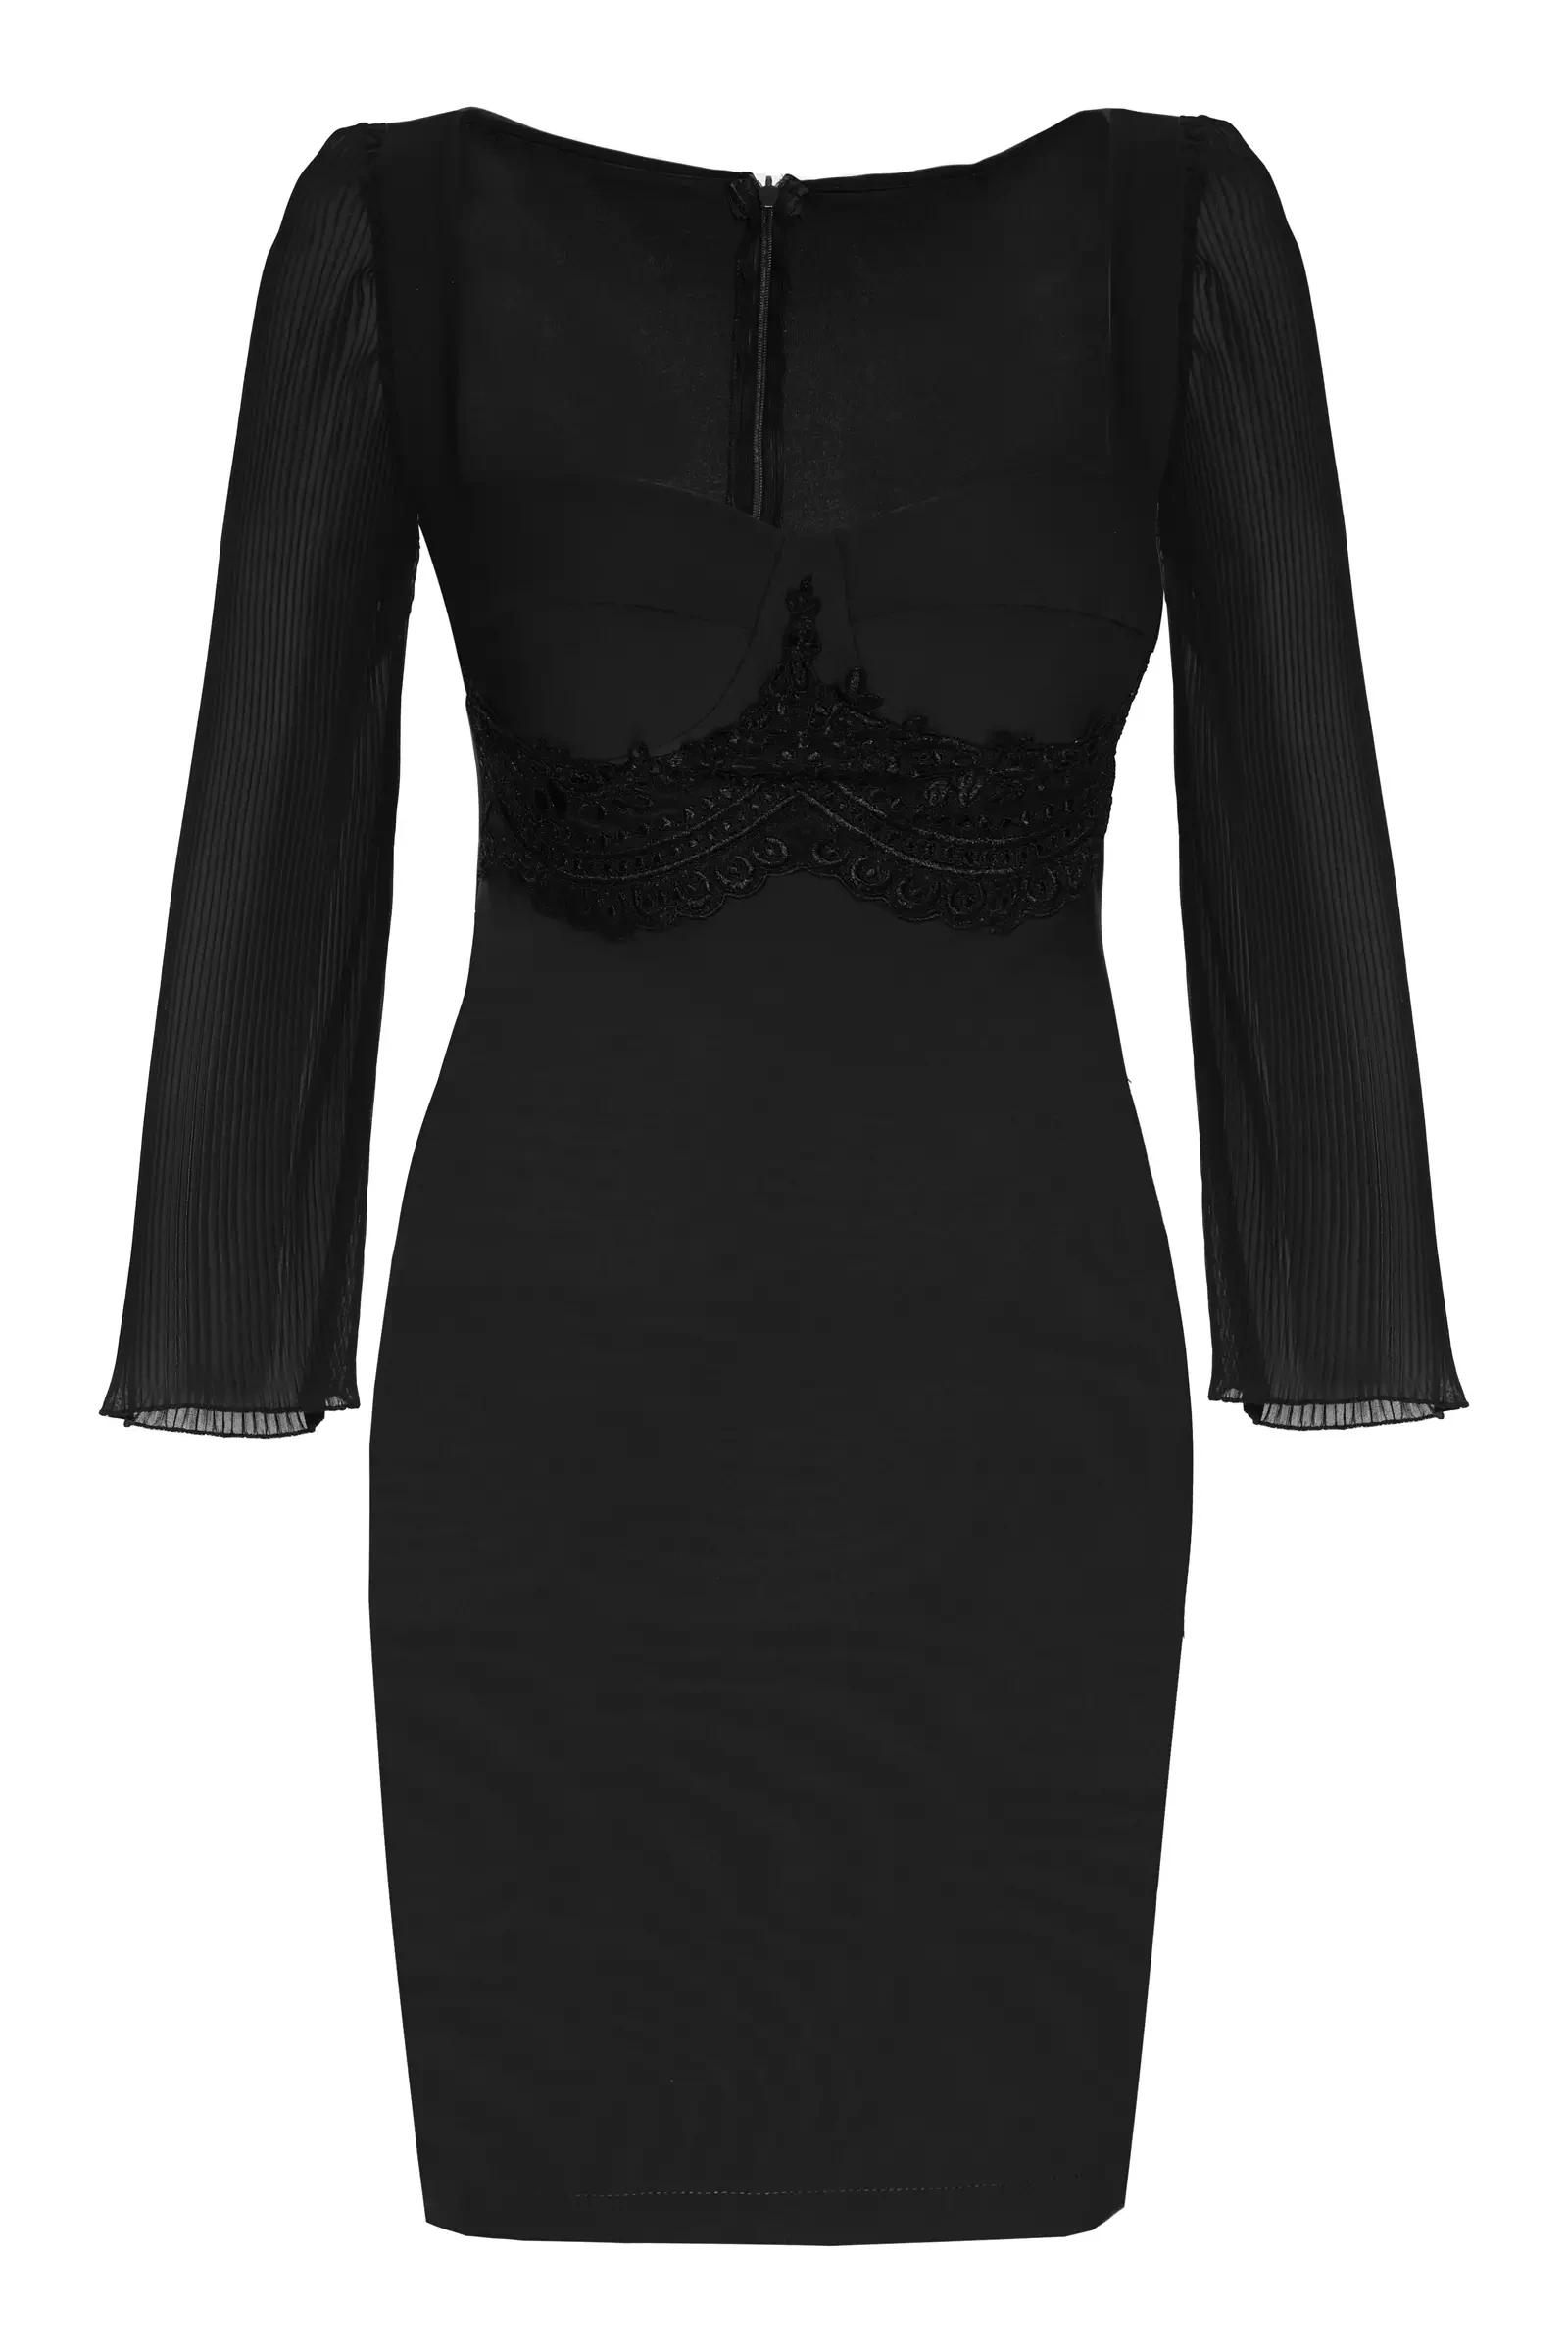 Black crepe long sleeve mini dress